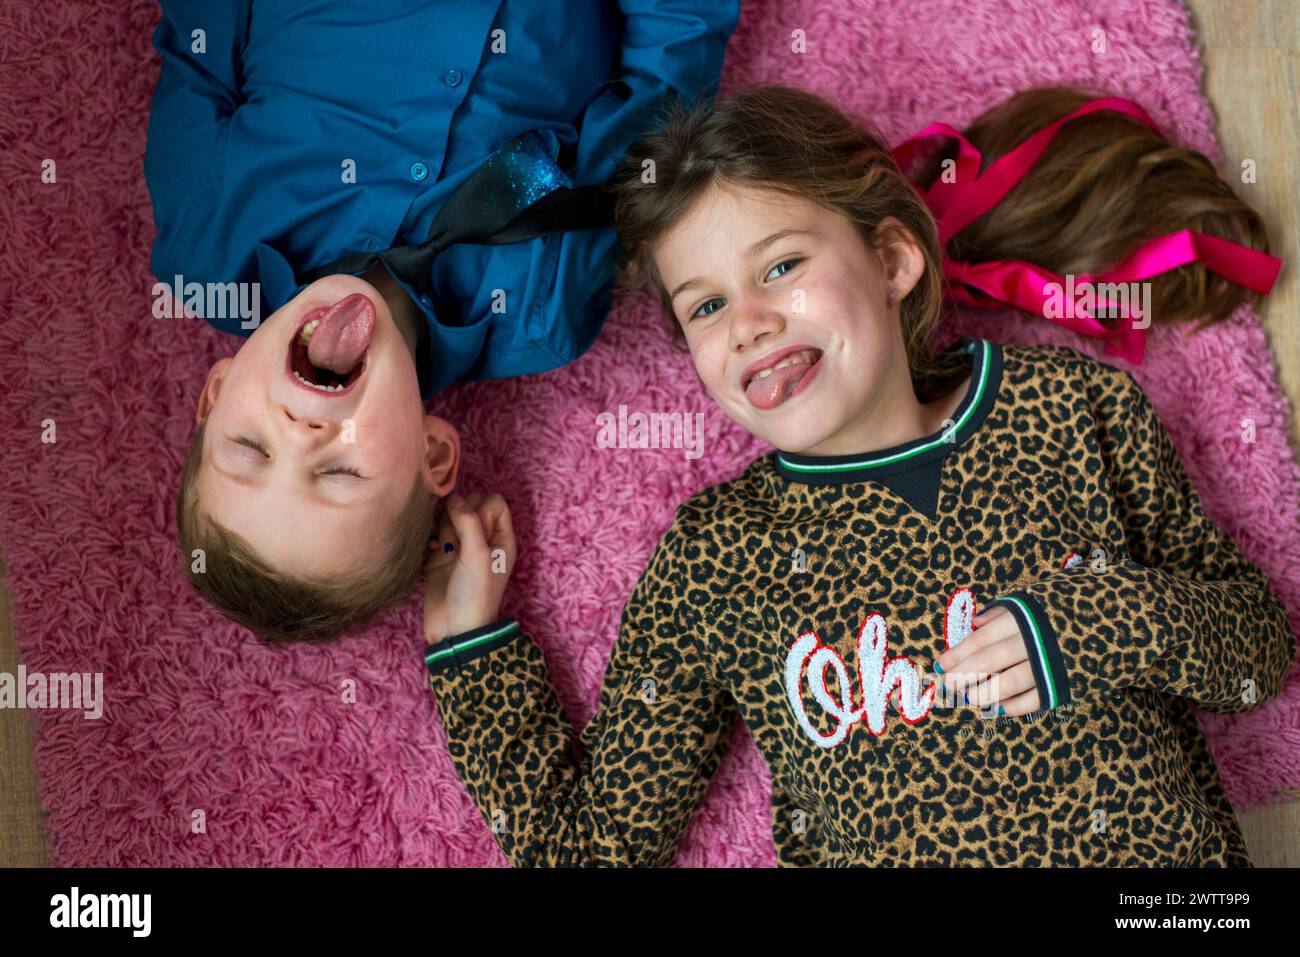 Zwei Kinder teilen sich einen fröhlichen Moment auf einem gemütlichen rosafarbenen Teppich. Stockfoto